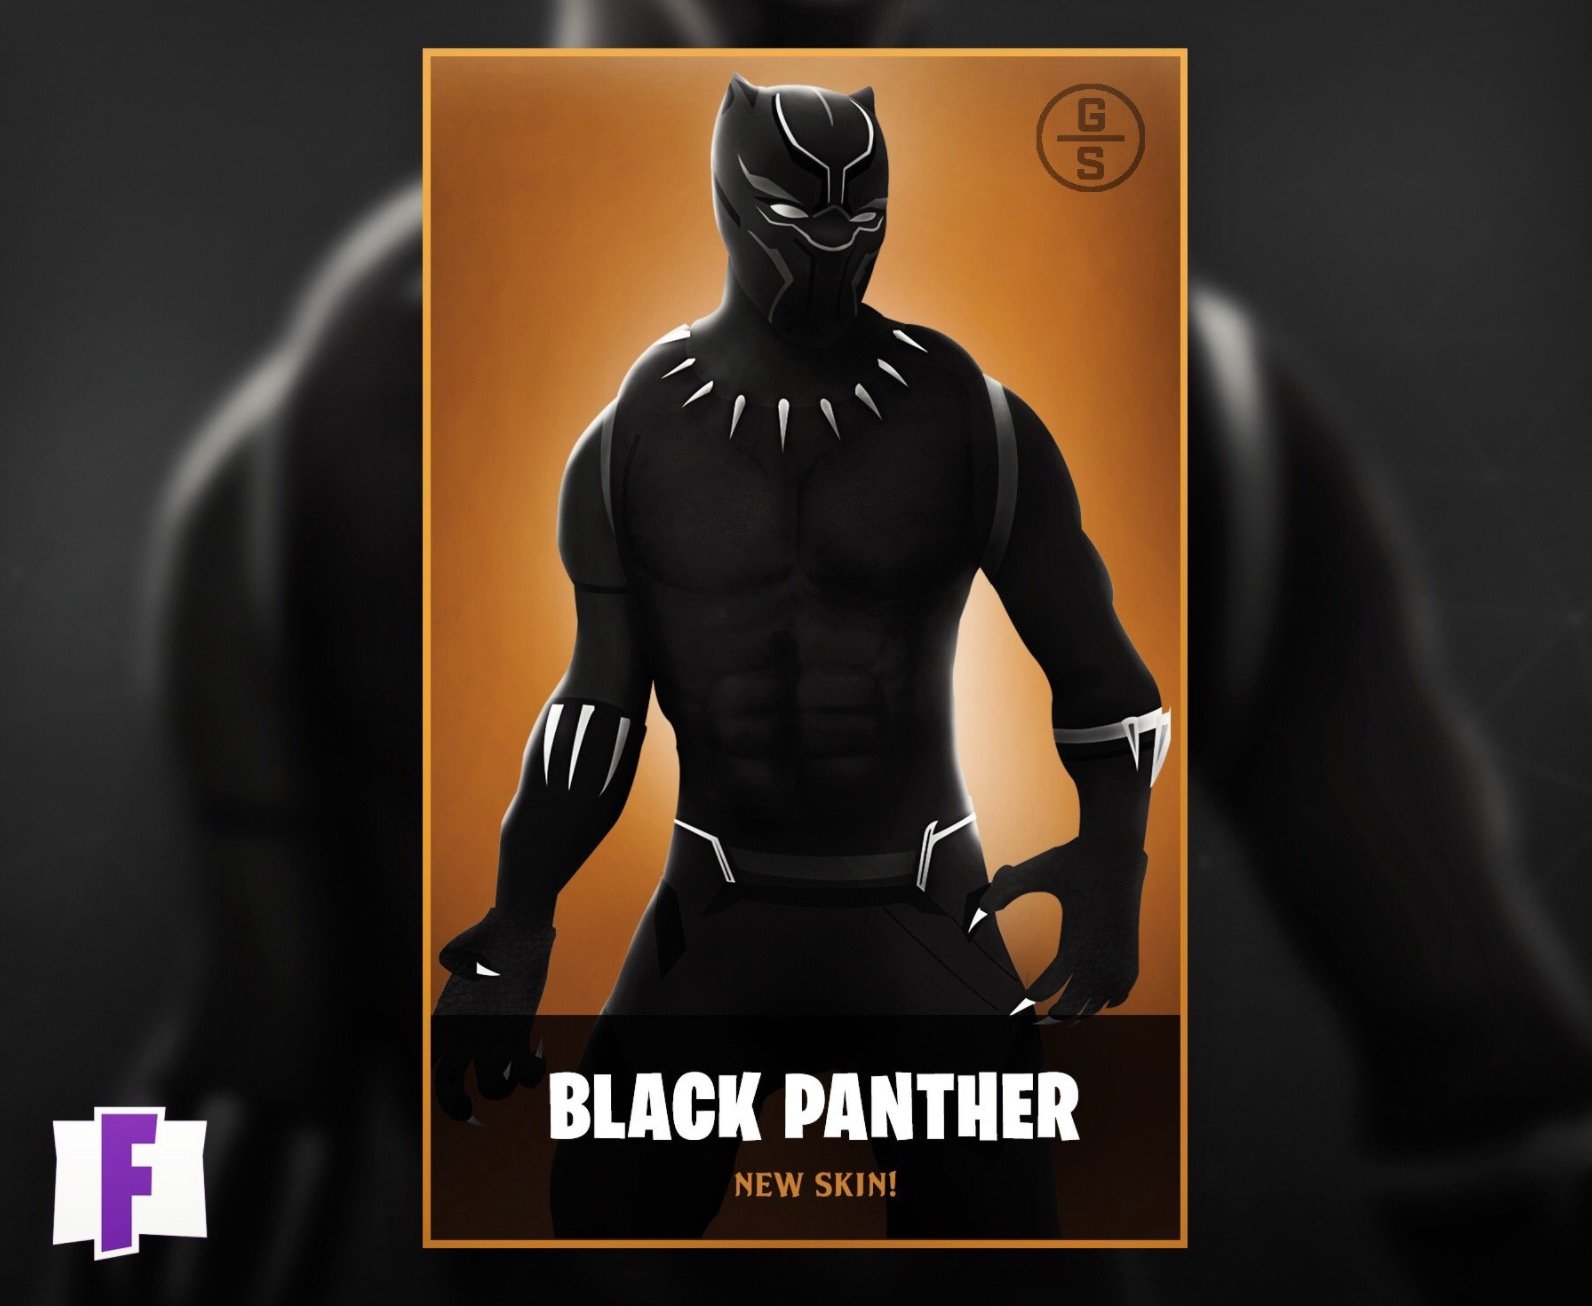 Fortnite Recibe Una Skin De Black Panther De La Mano De Un Fan - la iluminacion y las texturas de la skin se han abordado con photoshop la herramienta mas habitual en la edicion fotografica profesional